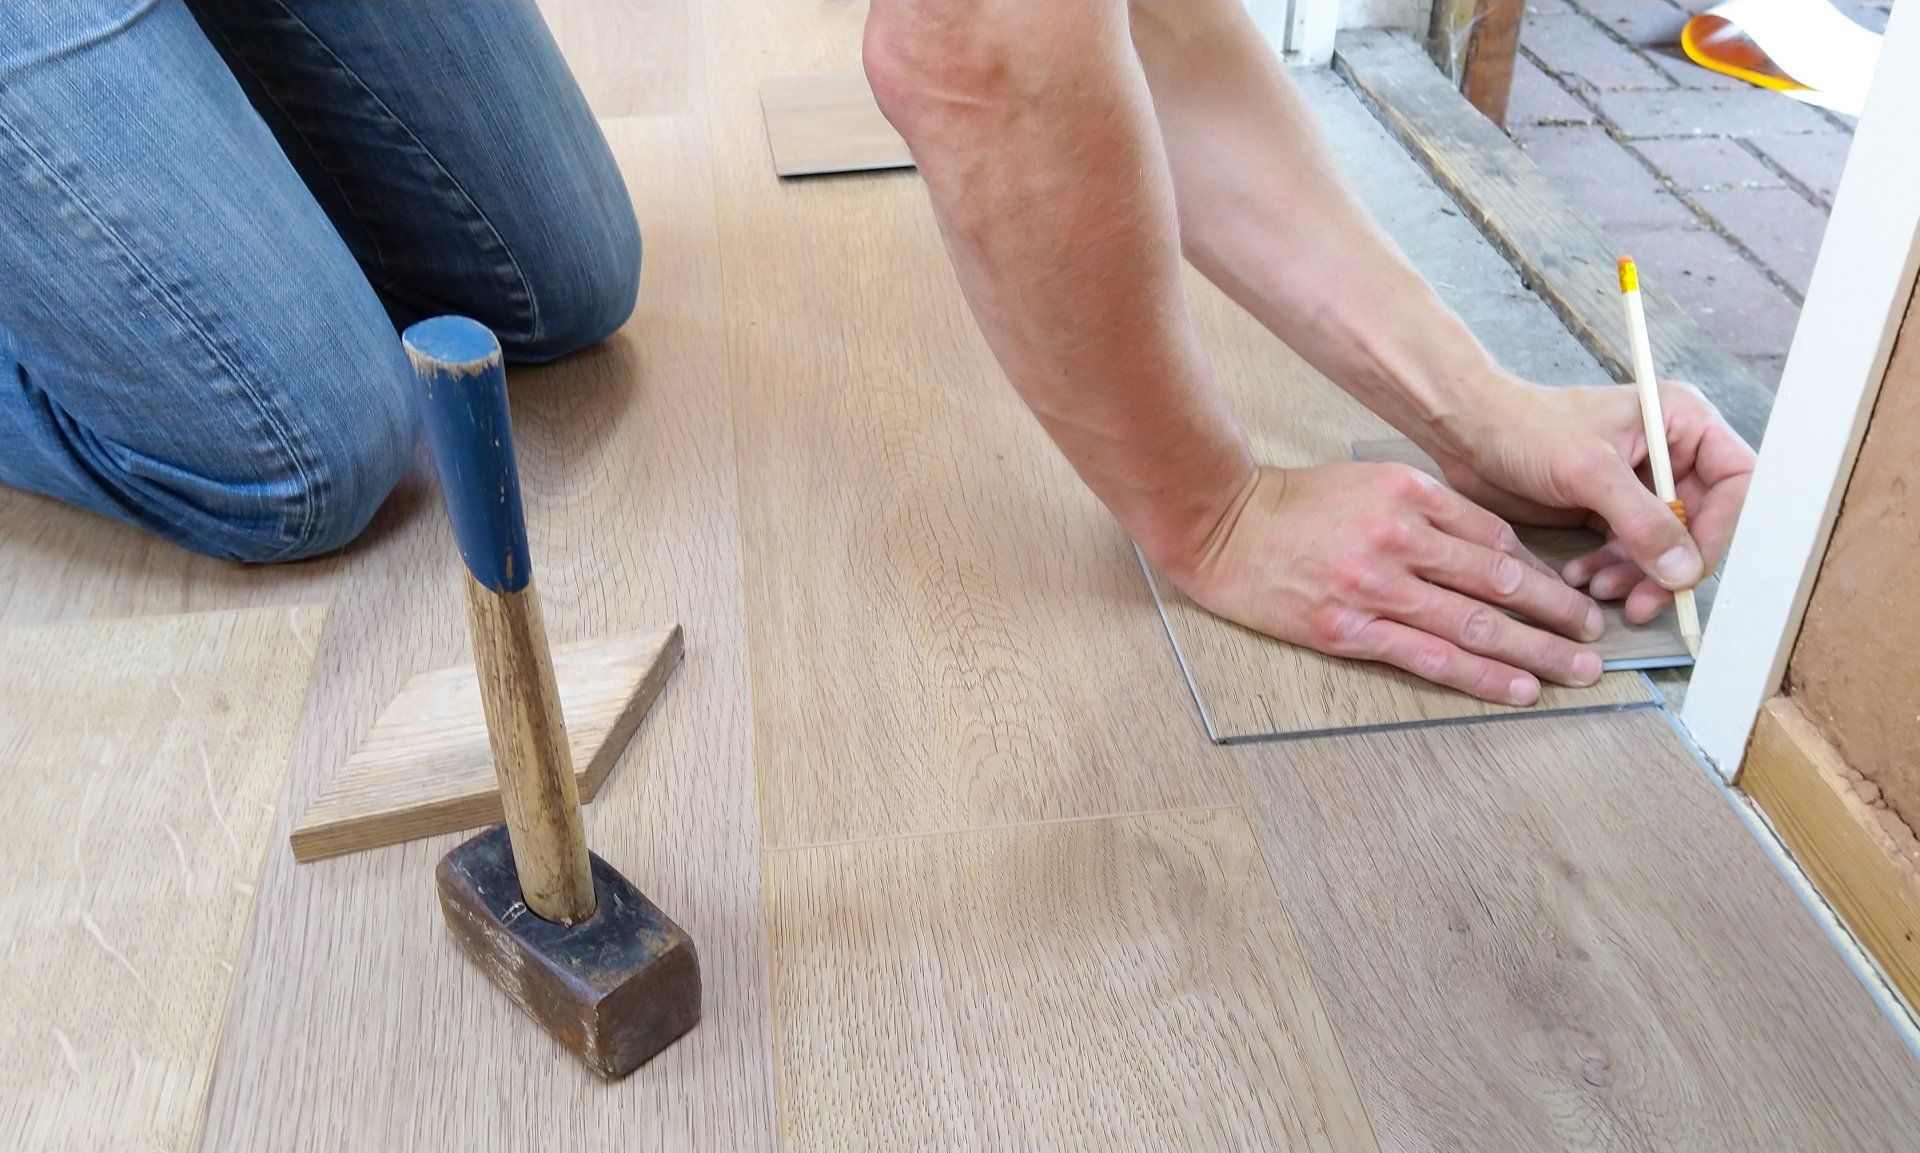 Installing flooring